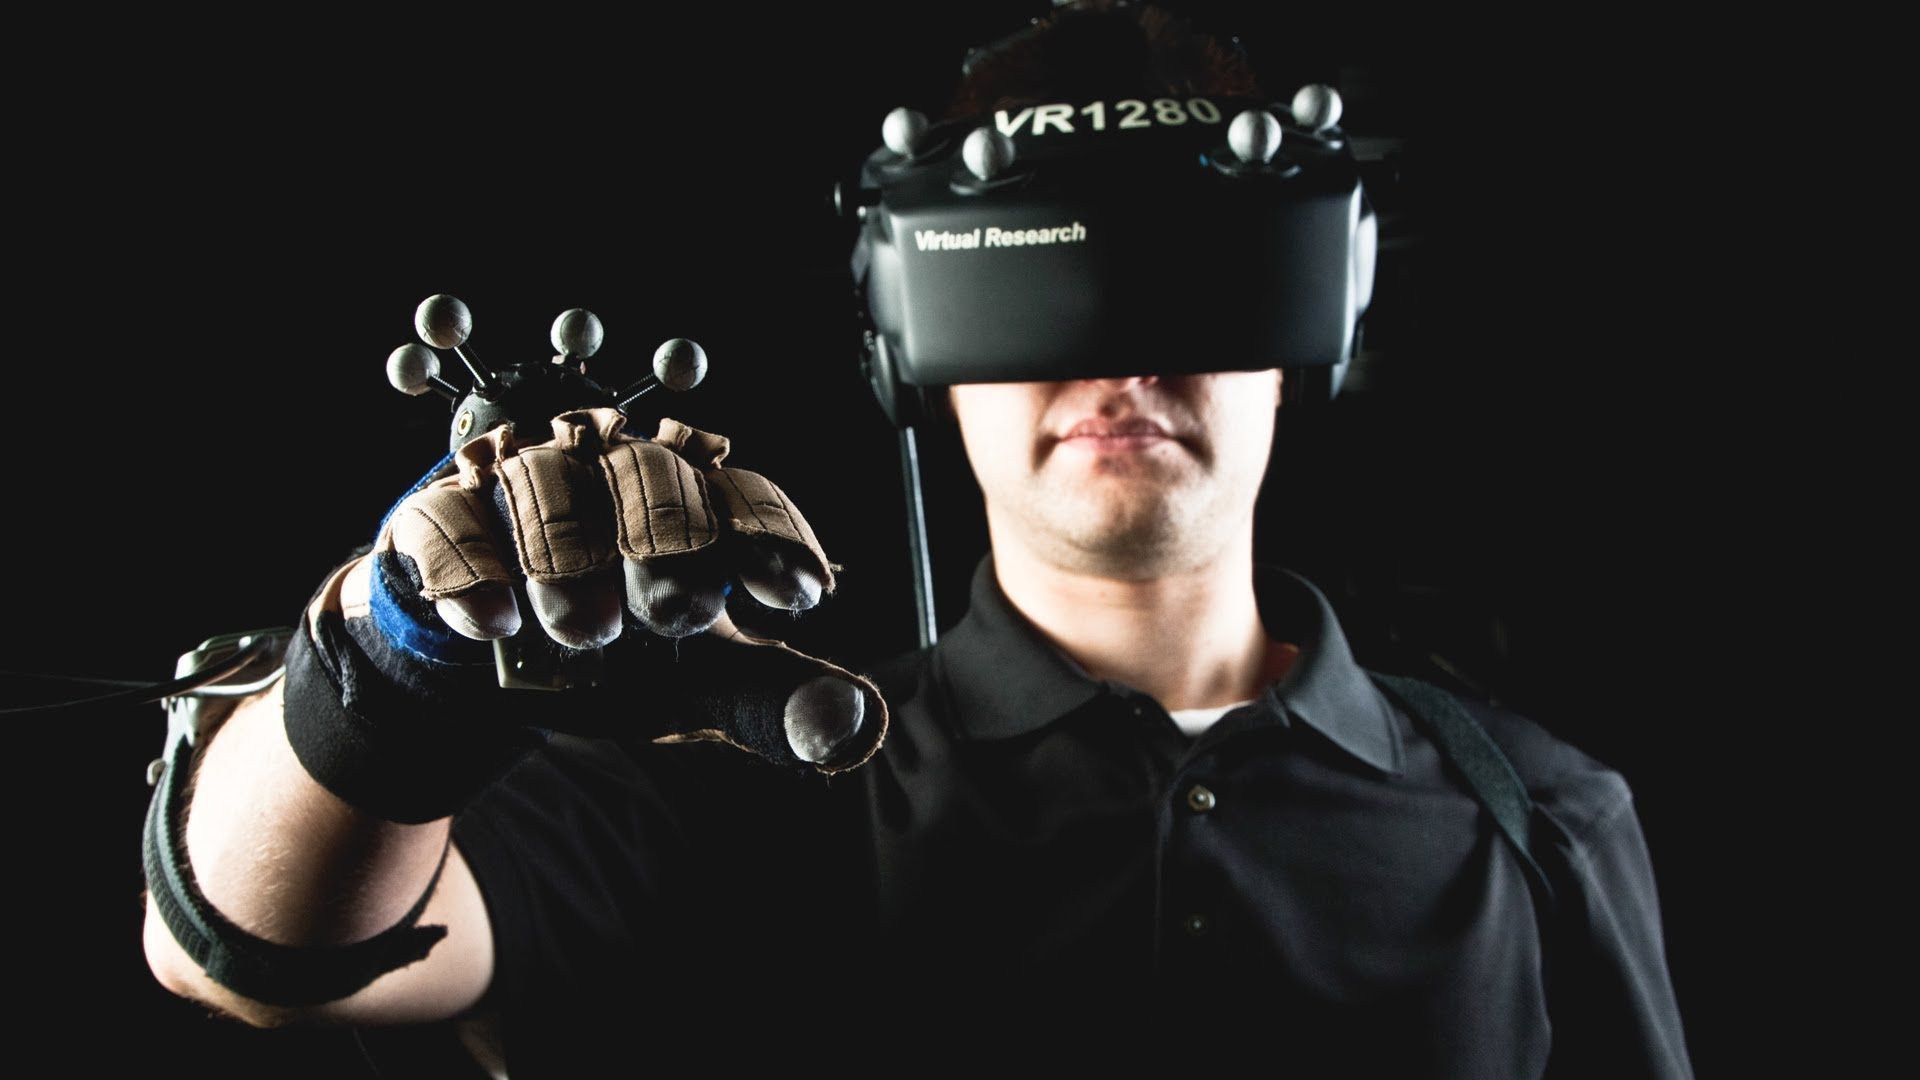 La réalité virtuelle, c'est quoi ?